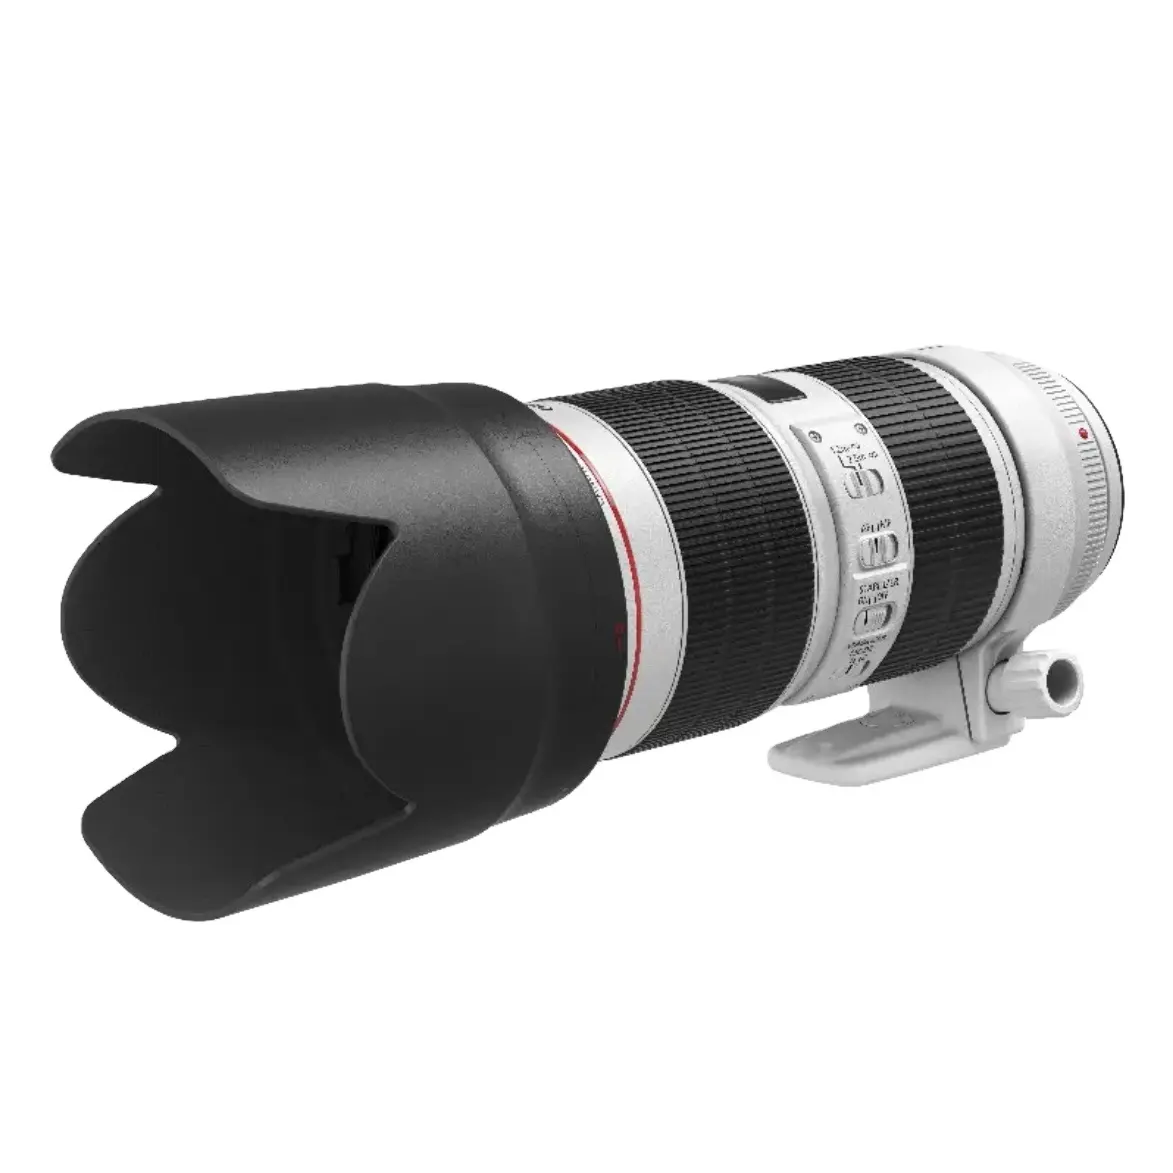 تستخدم كاميرا رقمية آلة تكبير تليفوتوغرافي عدسة ، كانون EF 70-200 مللي متر f/2.8L هو III USM SLR عدسة كبيرة ثلاثي التكبير